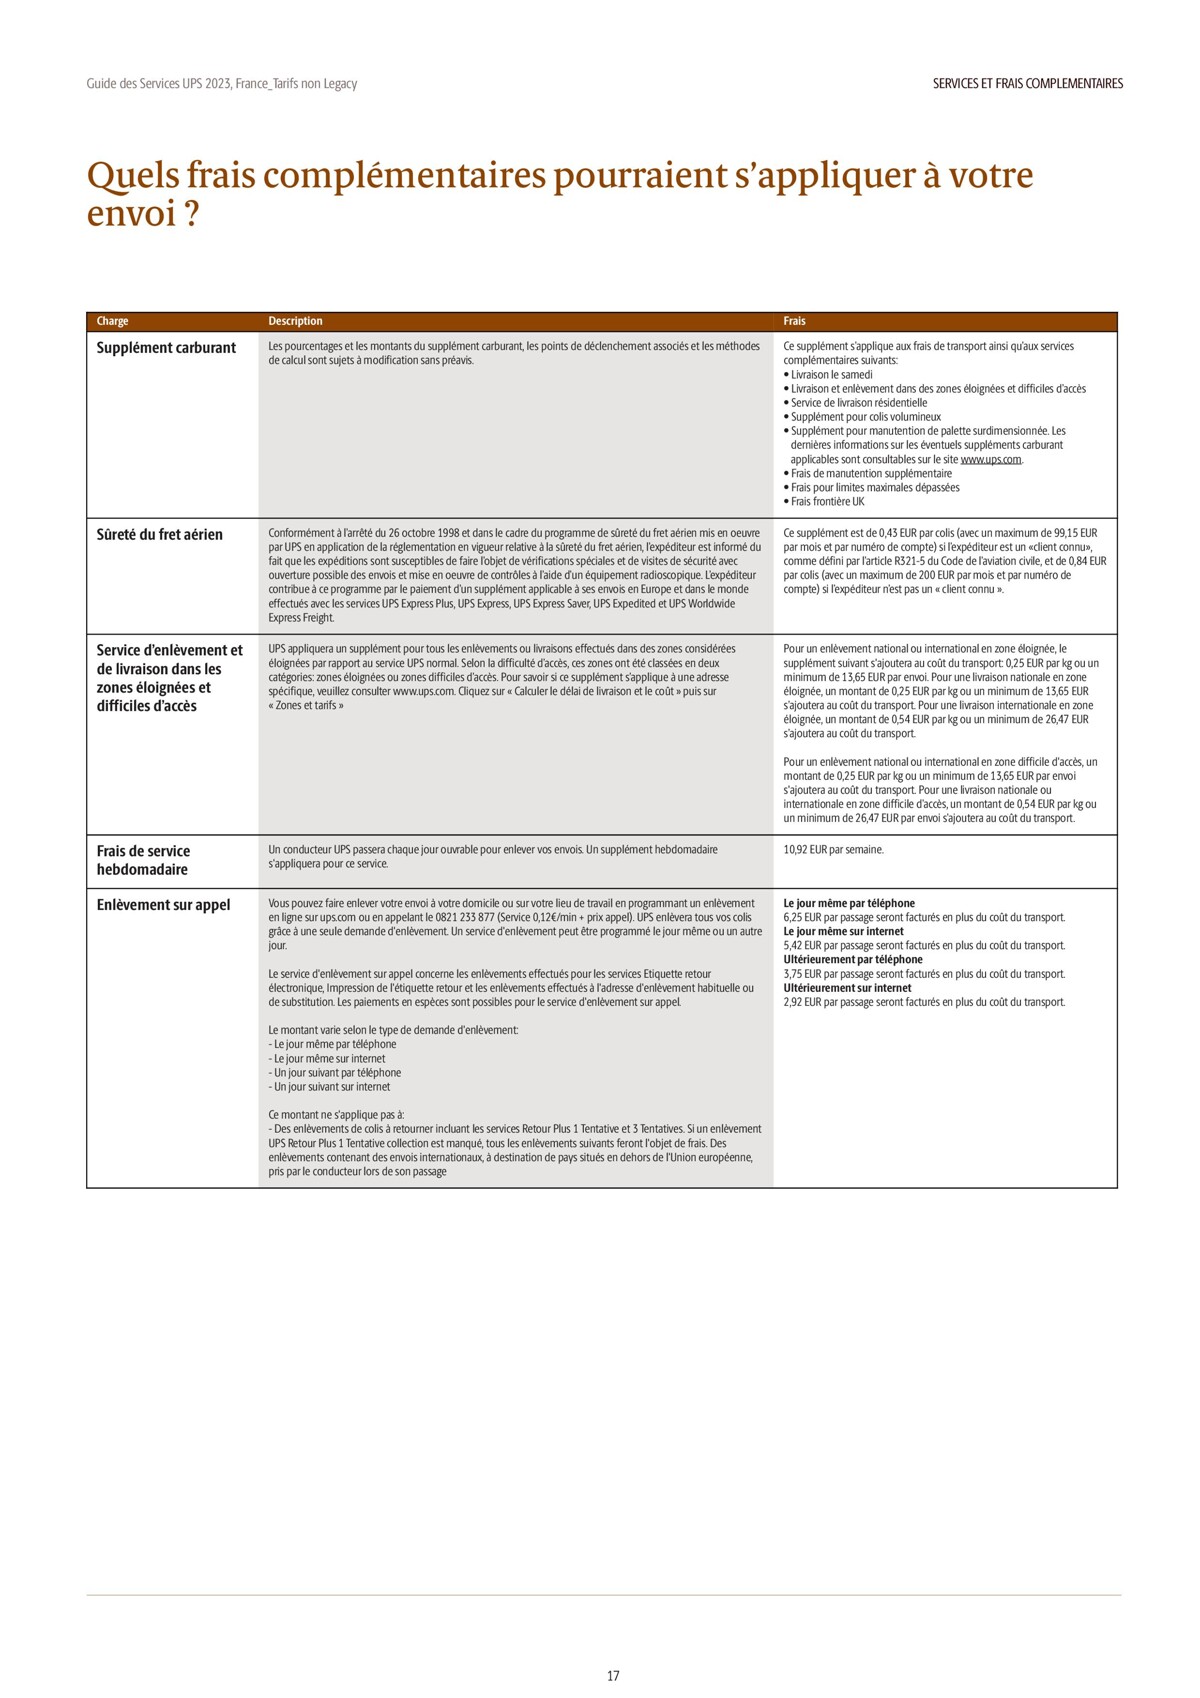 Catalogue Guide des Services 2023, page 00017